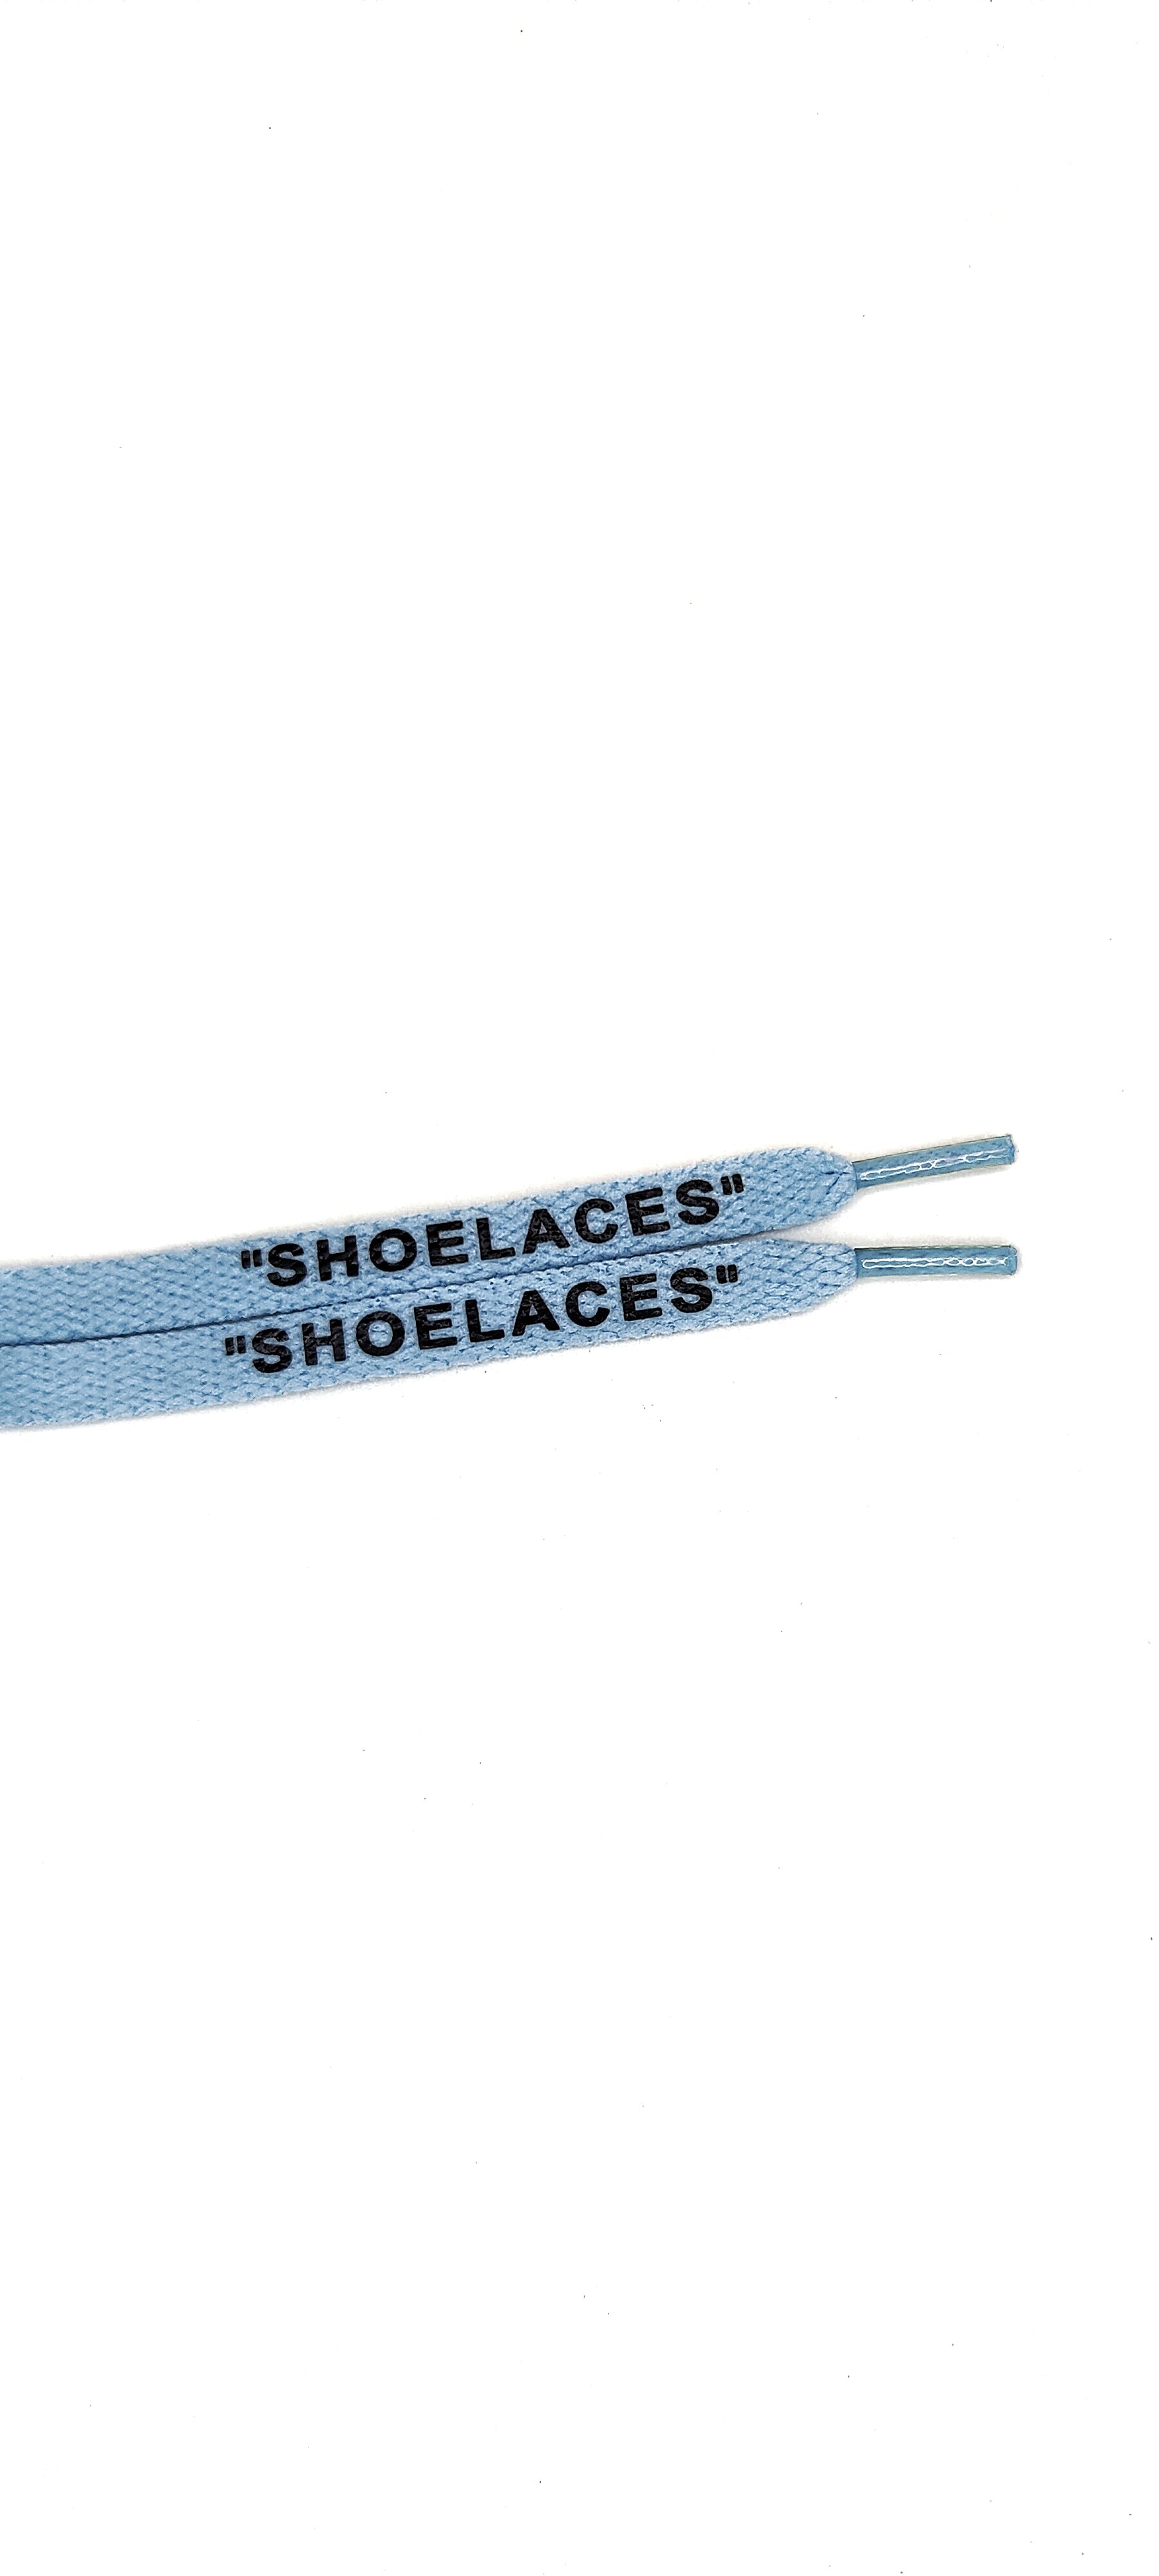 UNC/POLAR BLUE OFF-WHITE STYLE "SHOELACES" BY TGLC